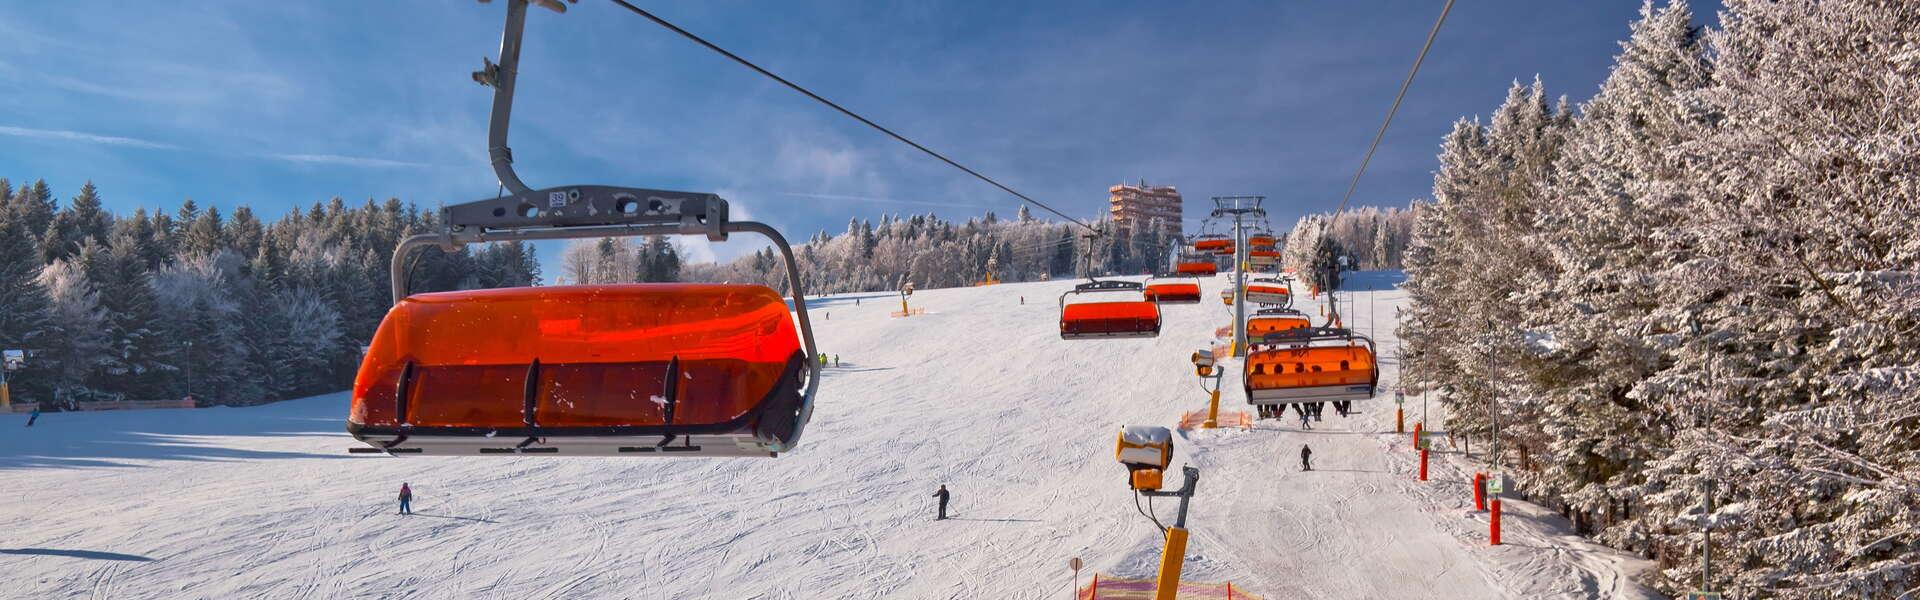 Widok na ośnieżony stok narciarski po którym jeżdżą narciarze.